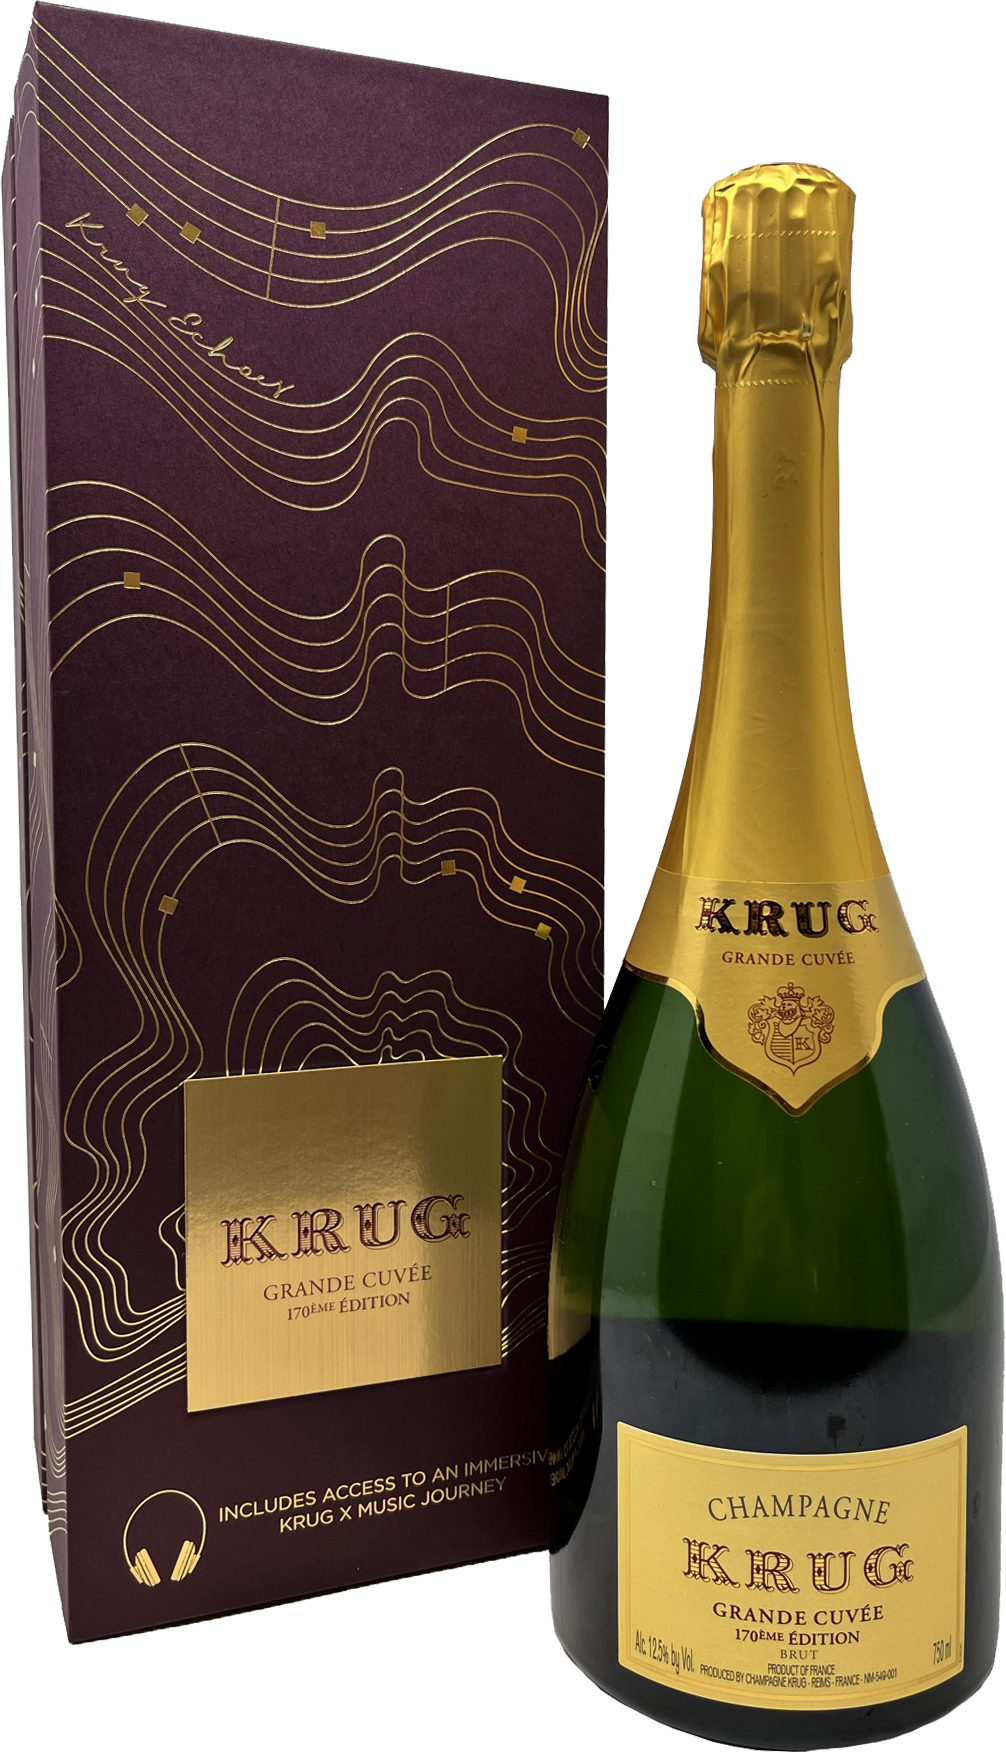 Cuvee Brut Wine Krug 171ÈME ÉDITION – Champagne Grande Chateau